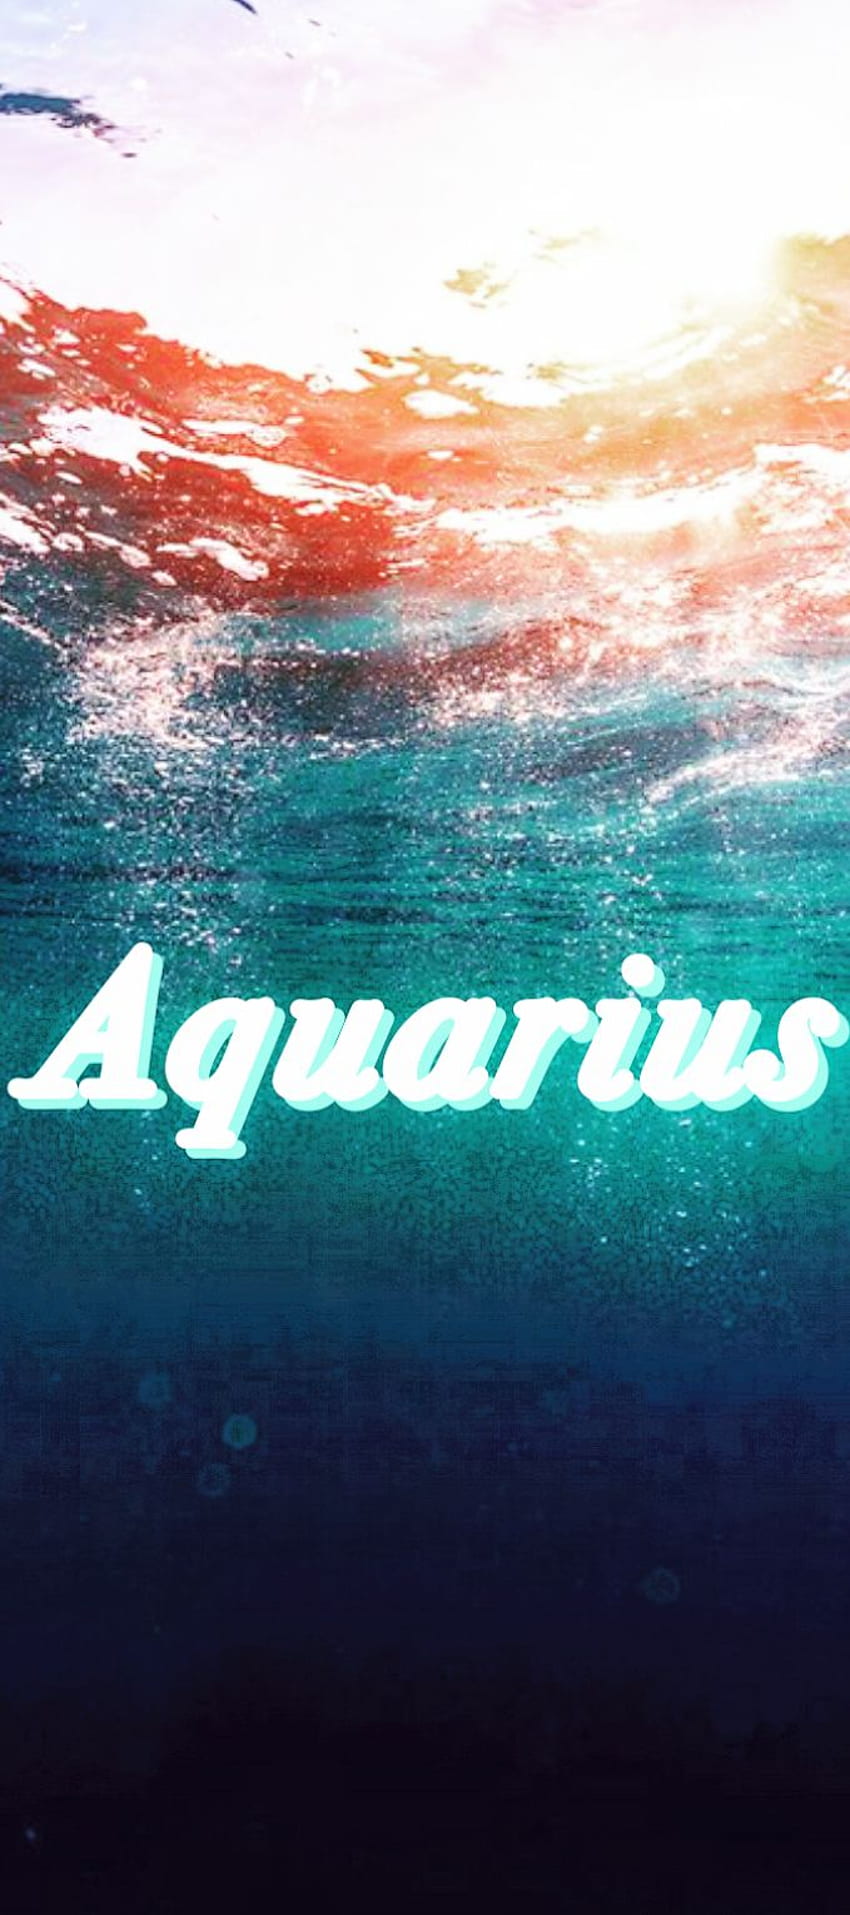 Aquarius HD phone wallpaper